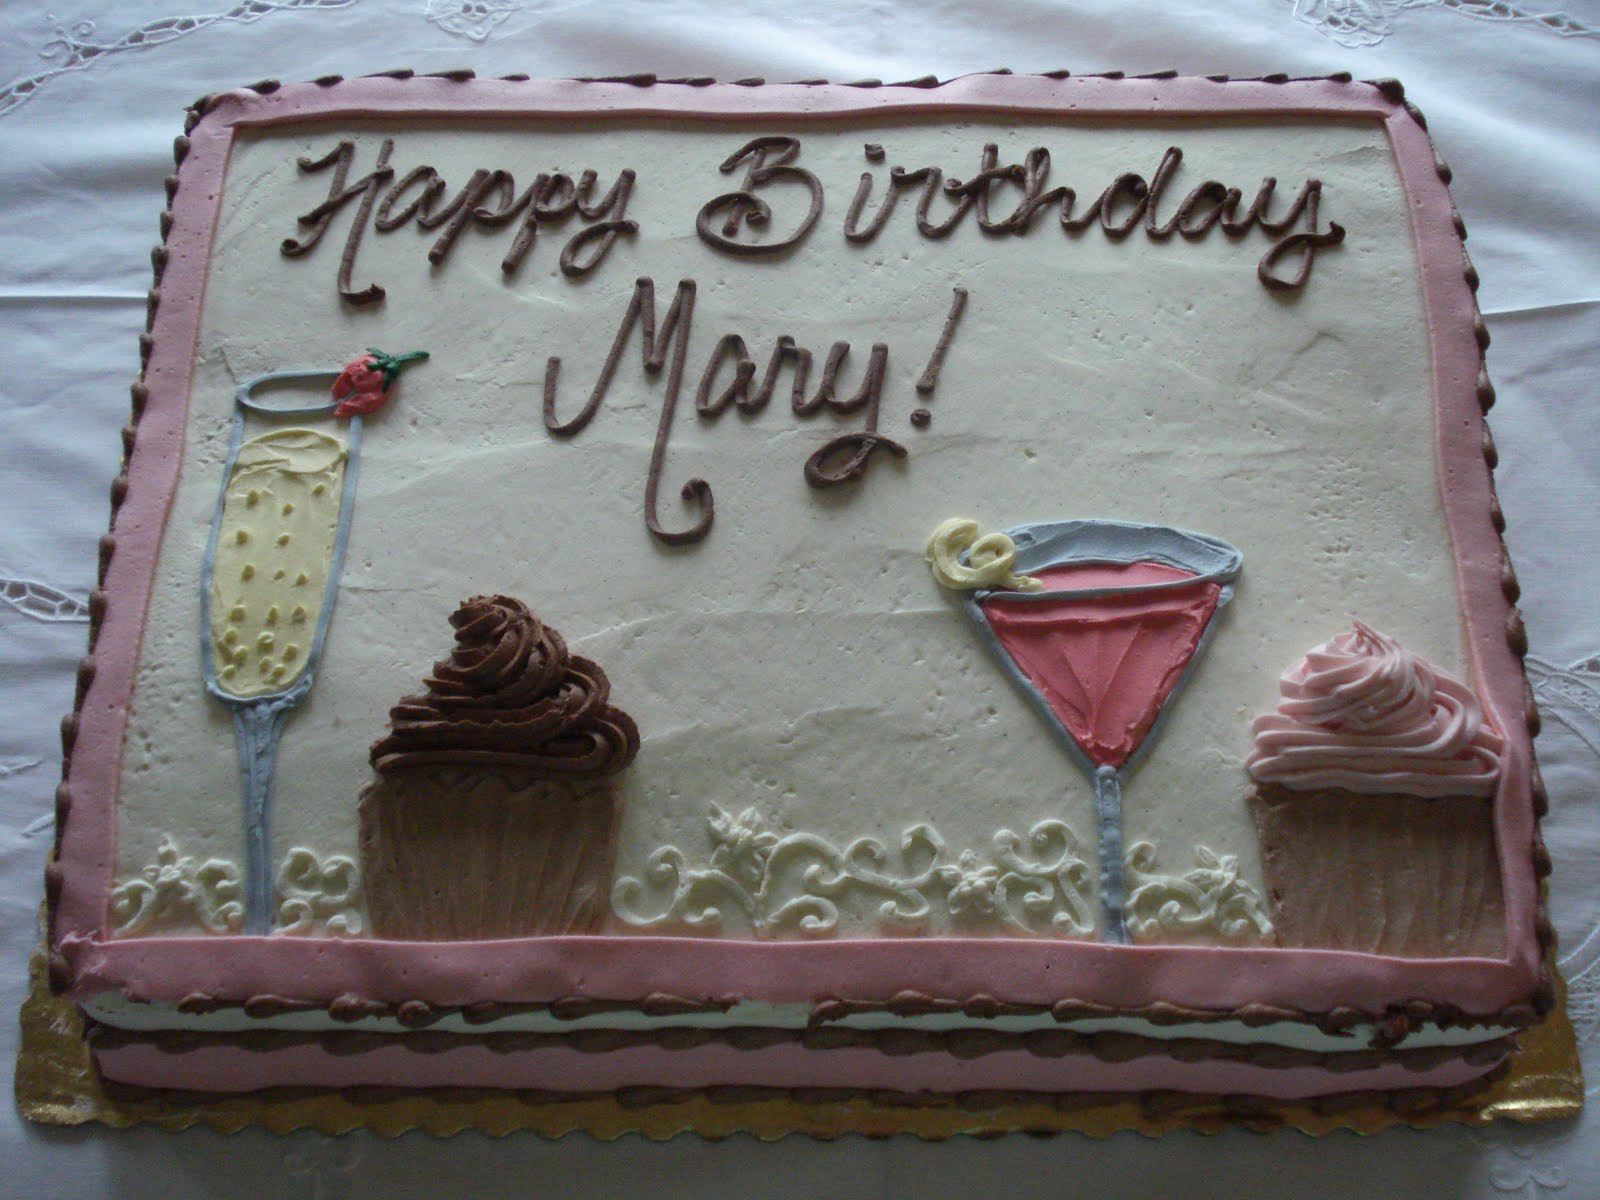 [Image: happy-birthday-mary-cake-fresh-happy-bir...y-cake.jpg]